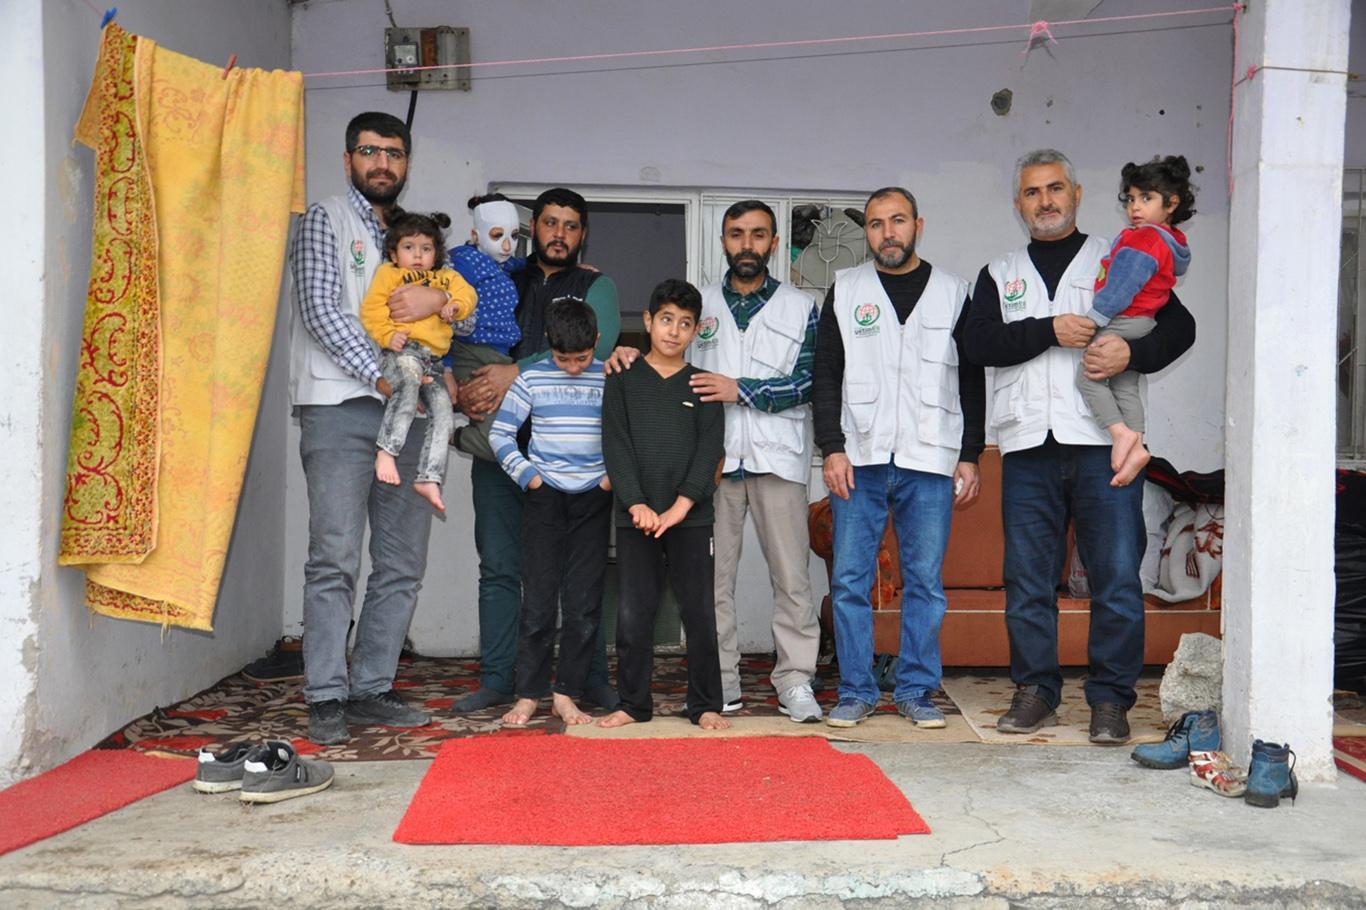 جمعية يد اليتيم تمد يدها الإغاثية إلى أسرة سورية